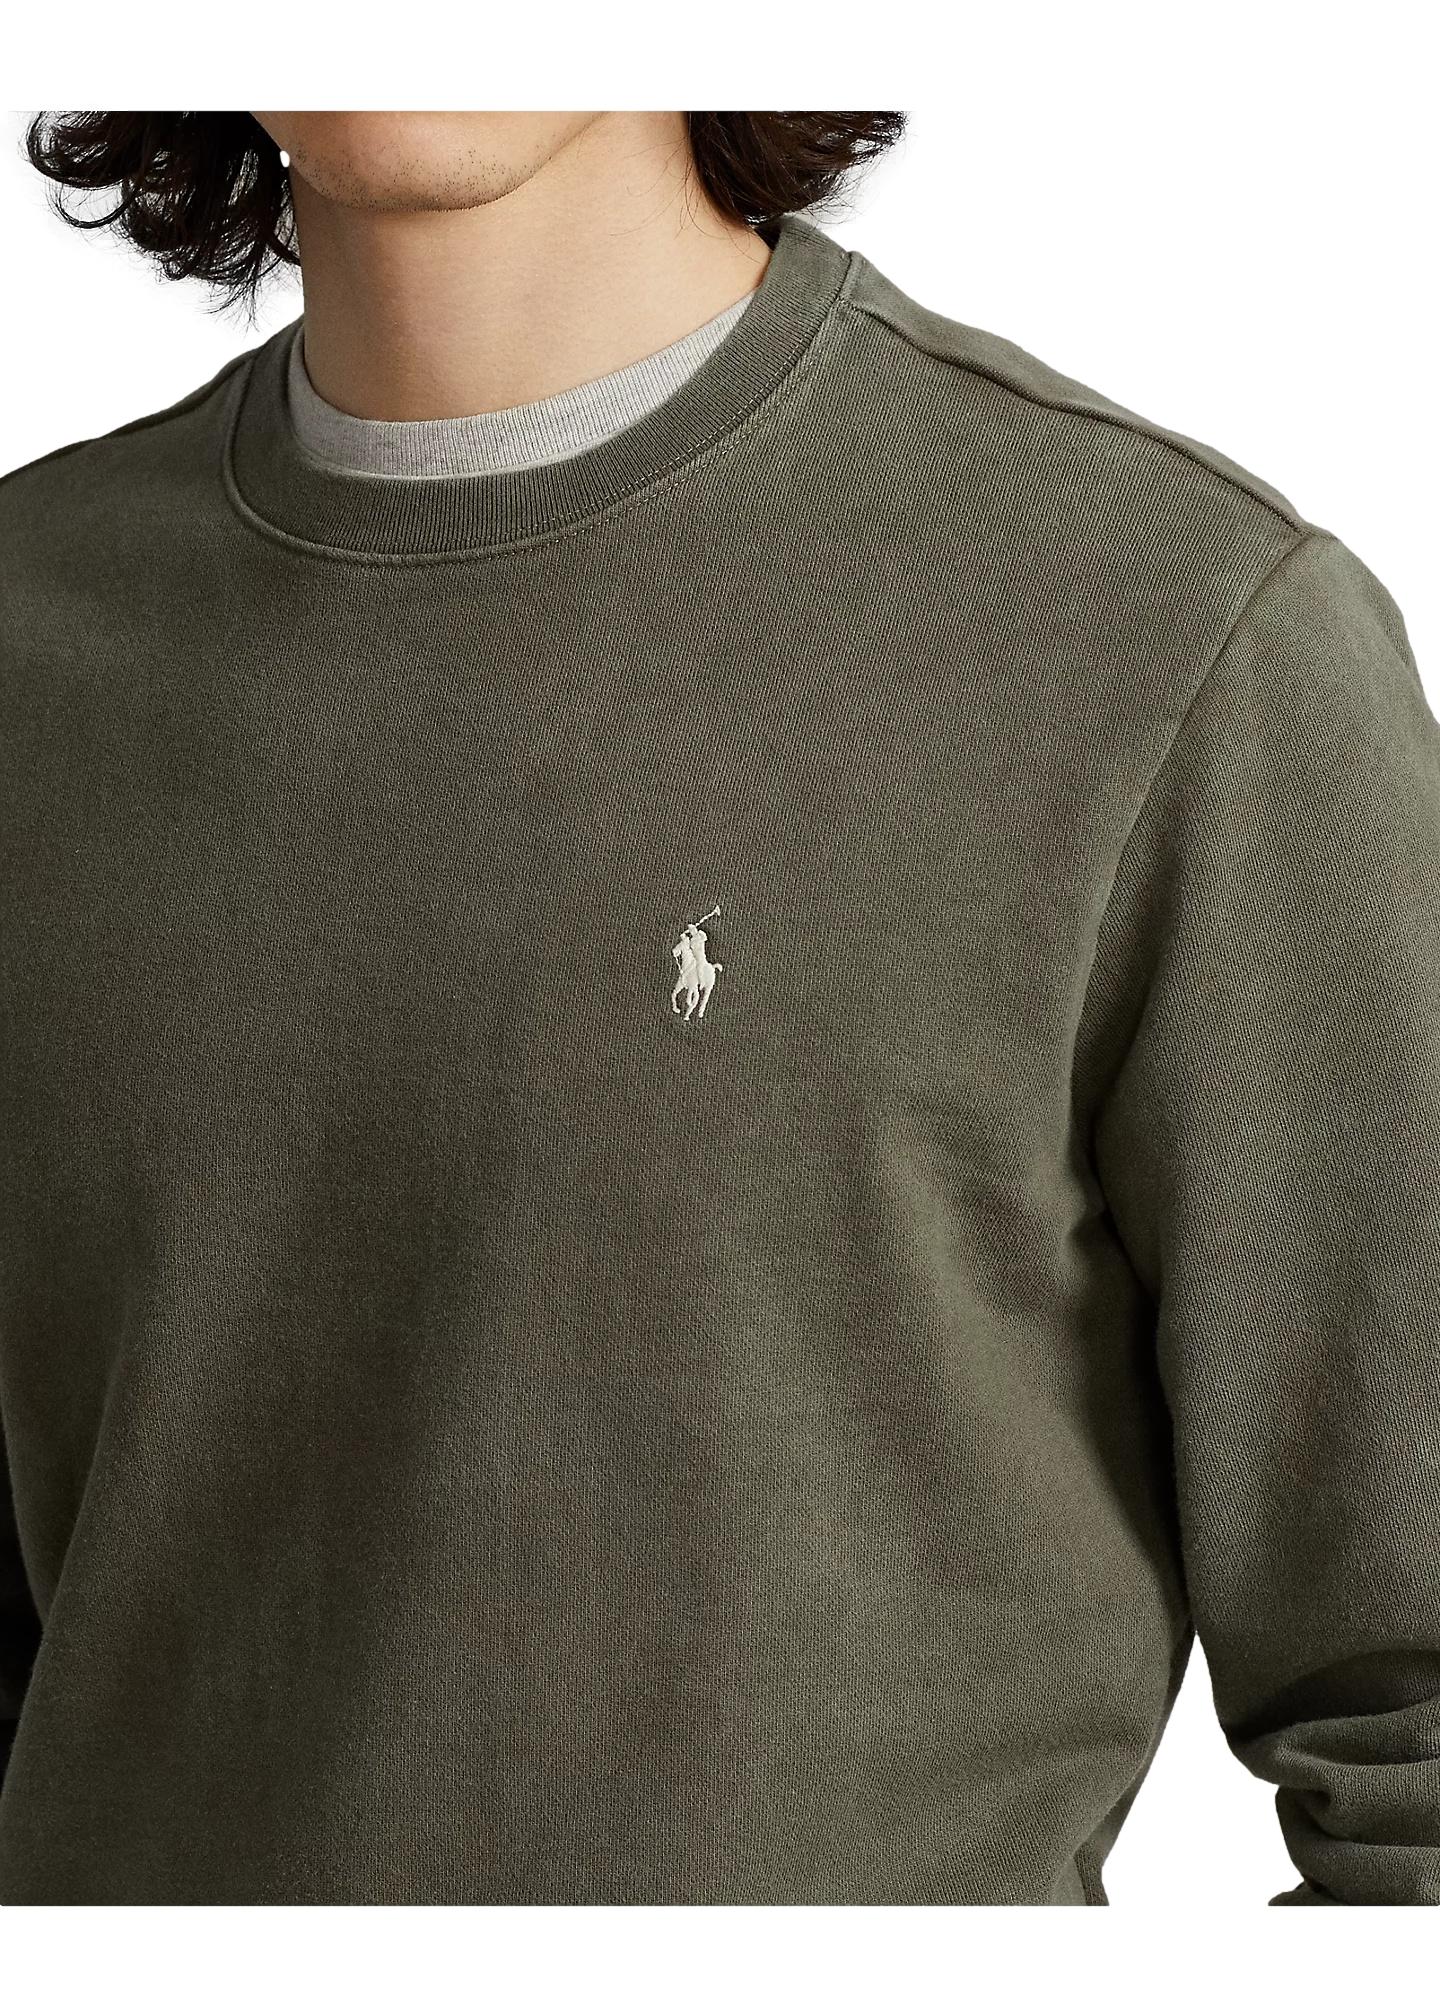 Polo Ralph Lauren Loopback Fleece Sweatshirt Genser Oliven - chrismoa.no